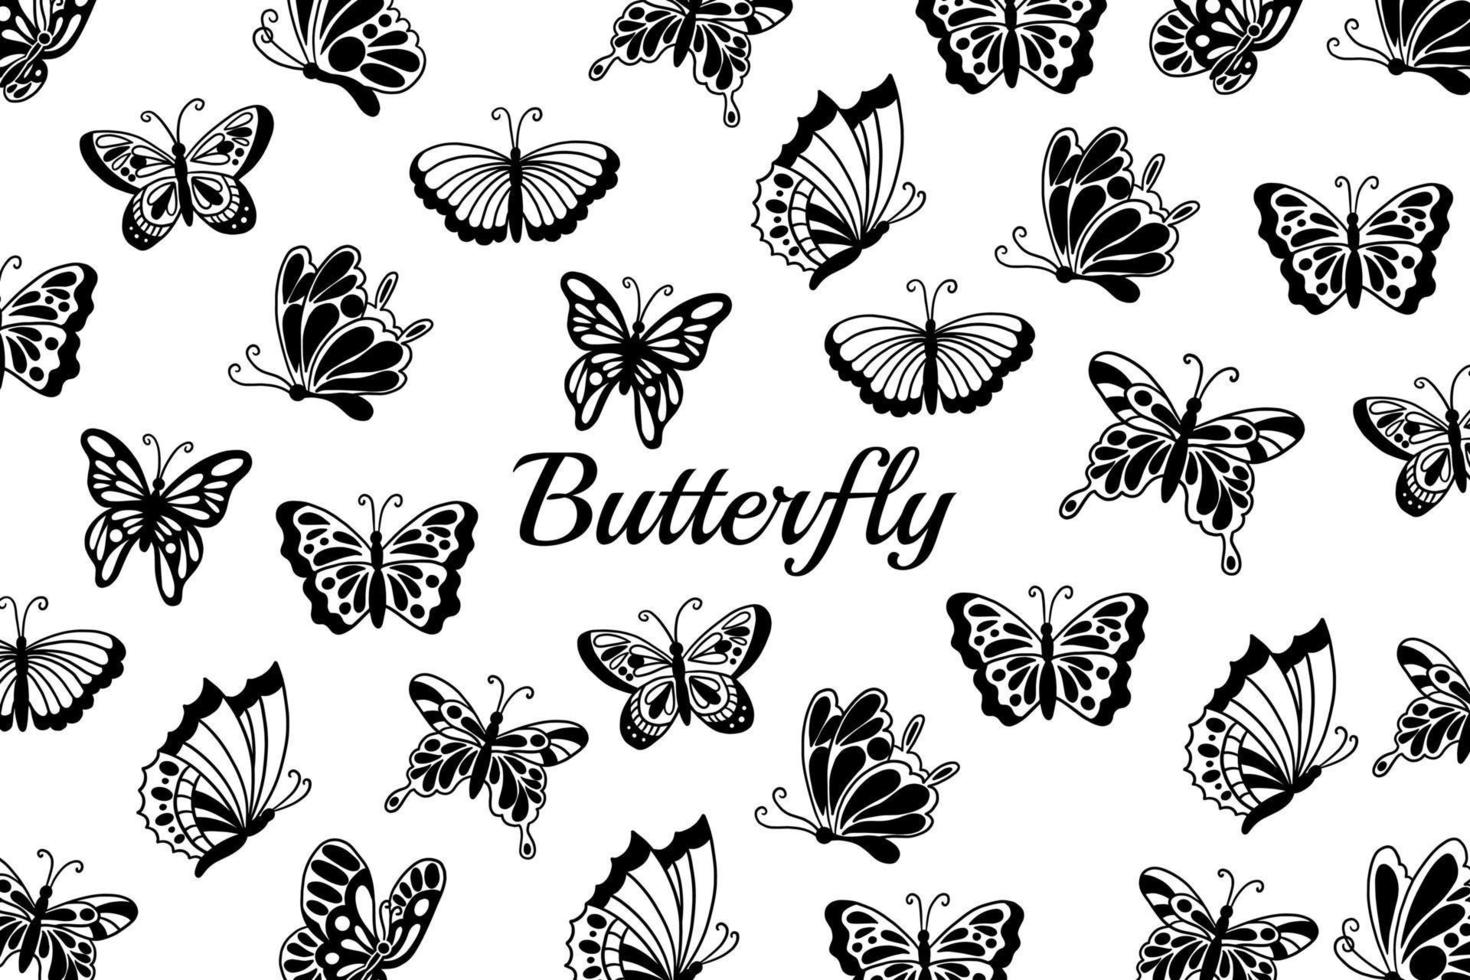 conjunto de colección bonita mariposa mariposas animal dibujado a mano ilustración vector